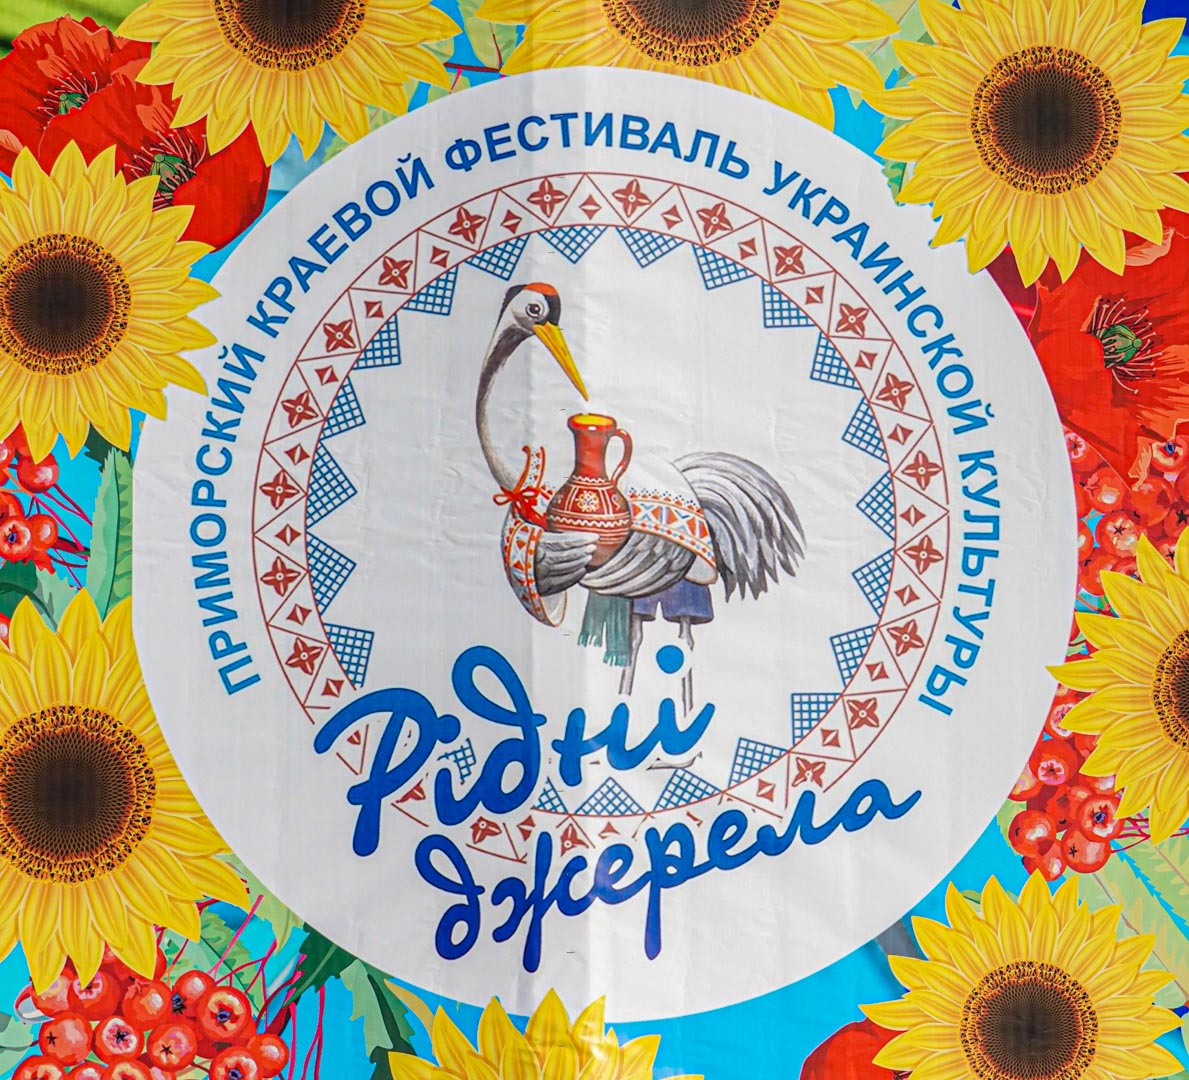 16 октября состоялся фестиваль украинской культуры "Рiднi Джерела"